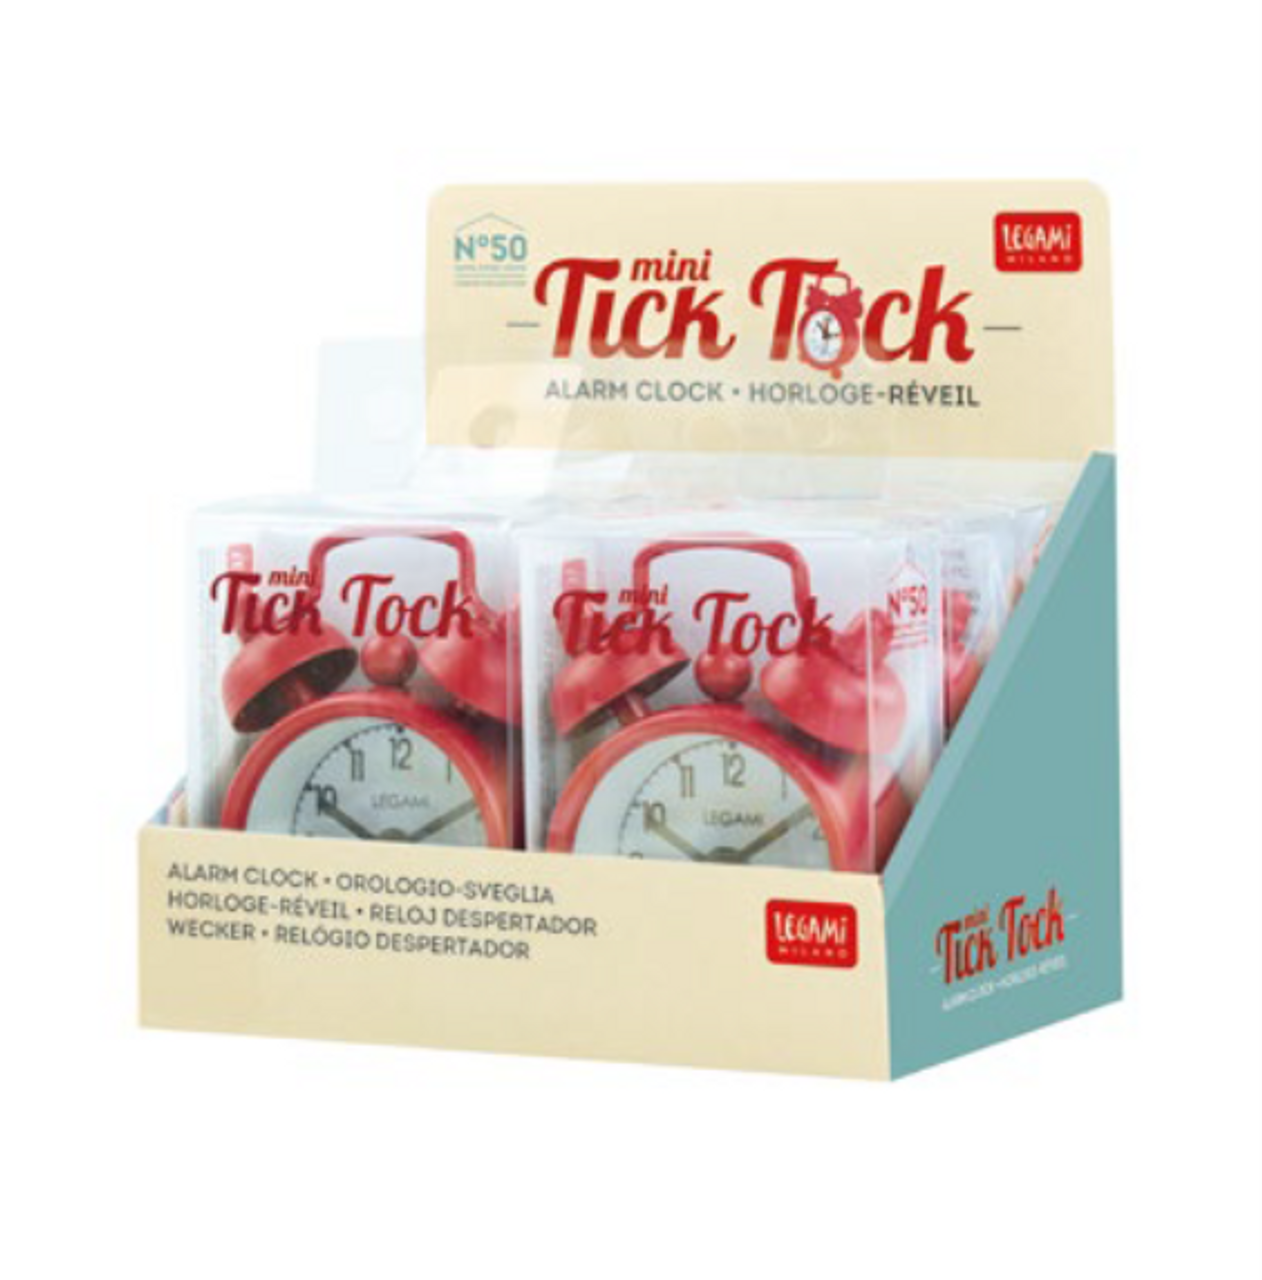 MINI TICK TOCK ALARM CLOCK - RED - DISPLAY 6 PCS